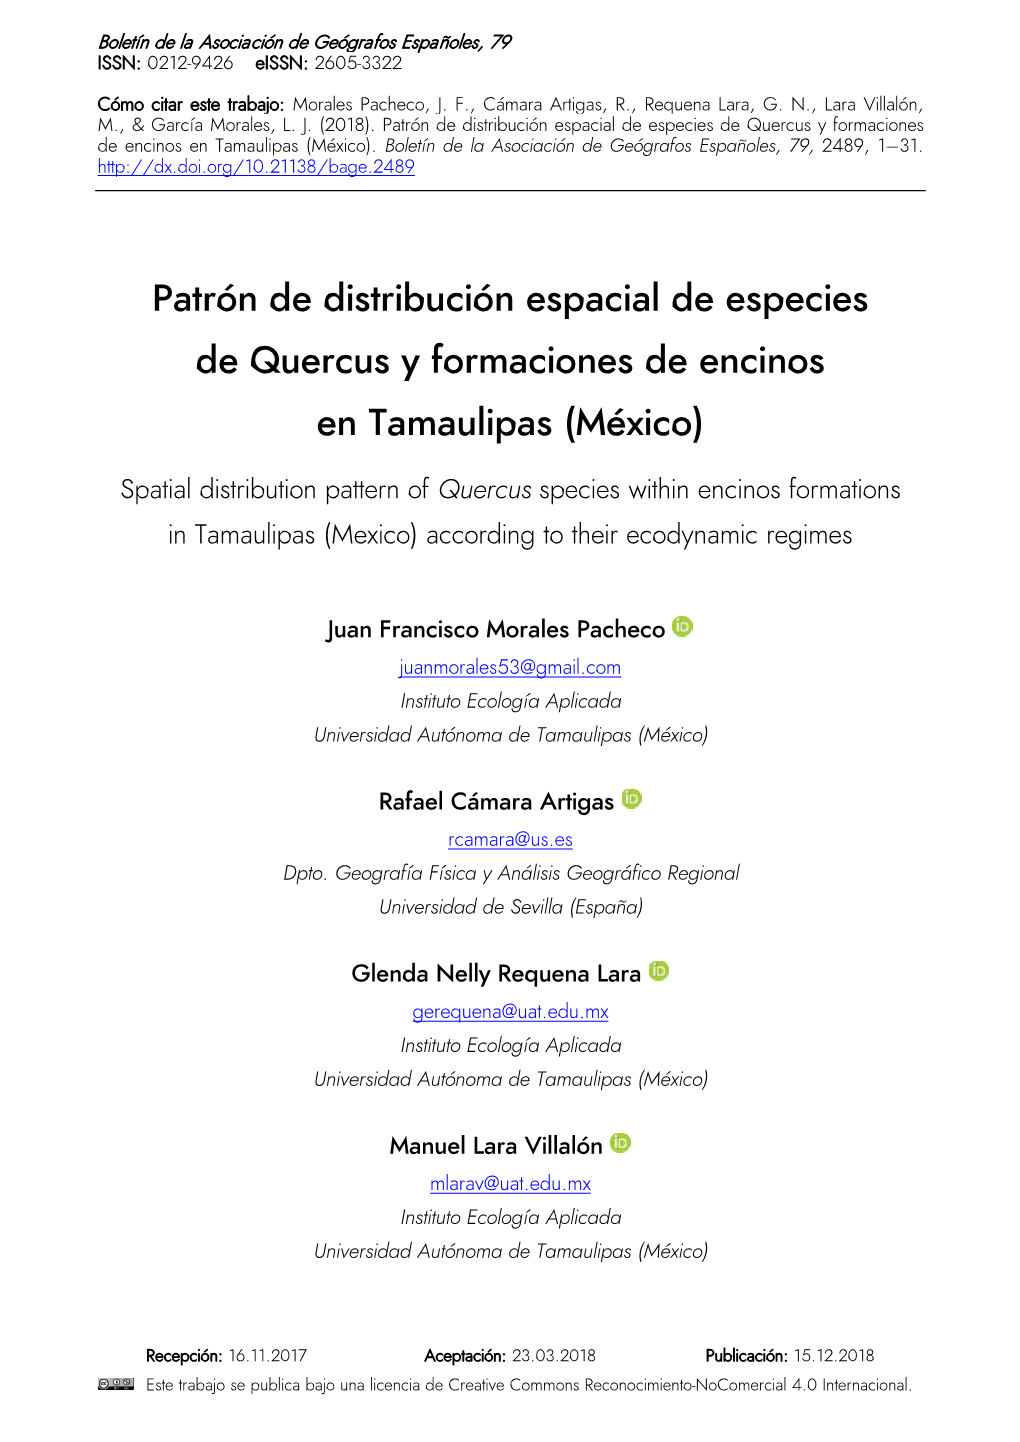 Patrón De Distribución Espacial De Especies De Quercus Y Formaciones De Encinos En Tamaulipas (México)